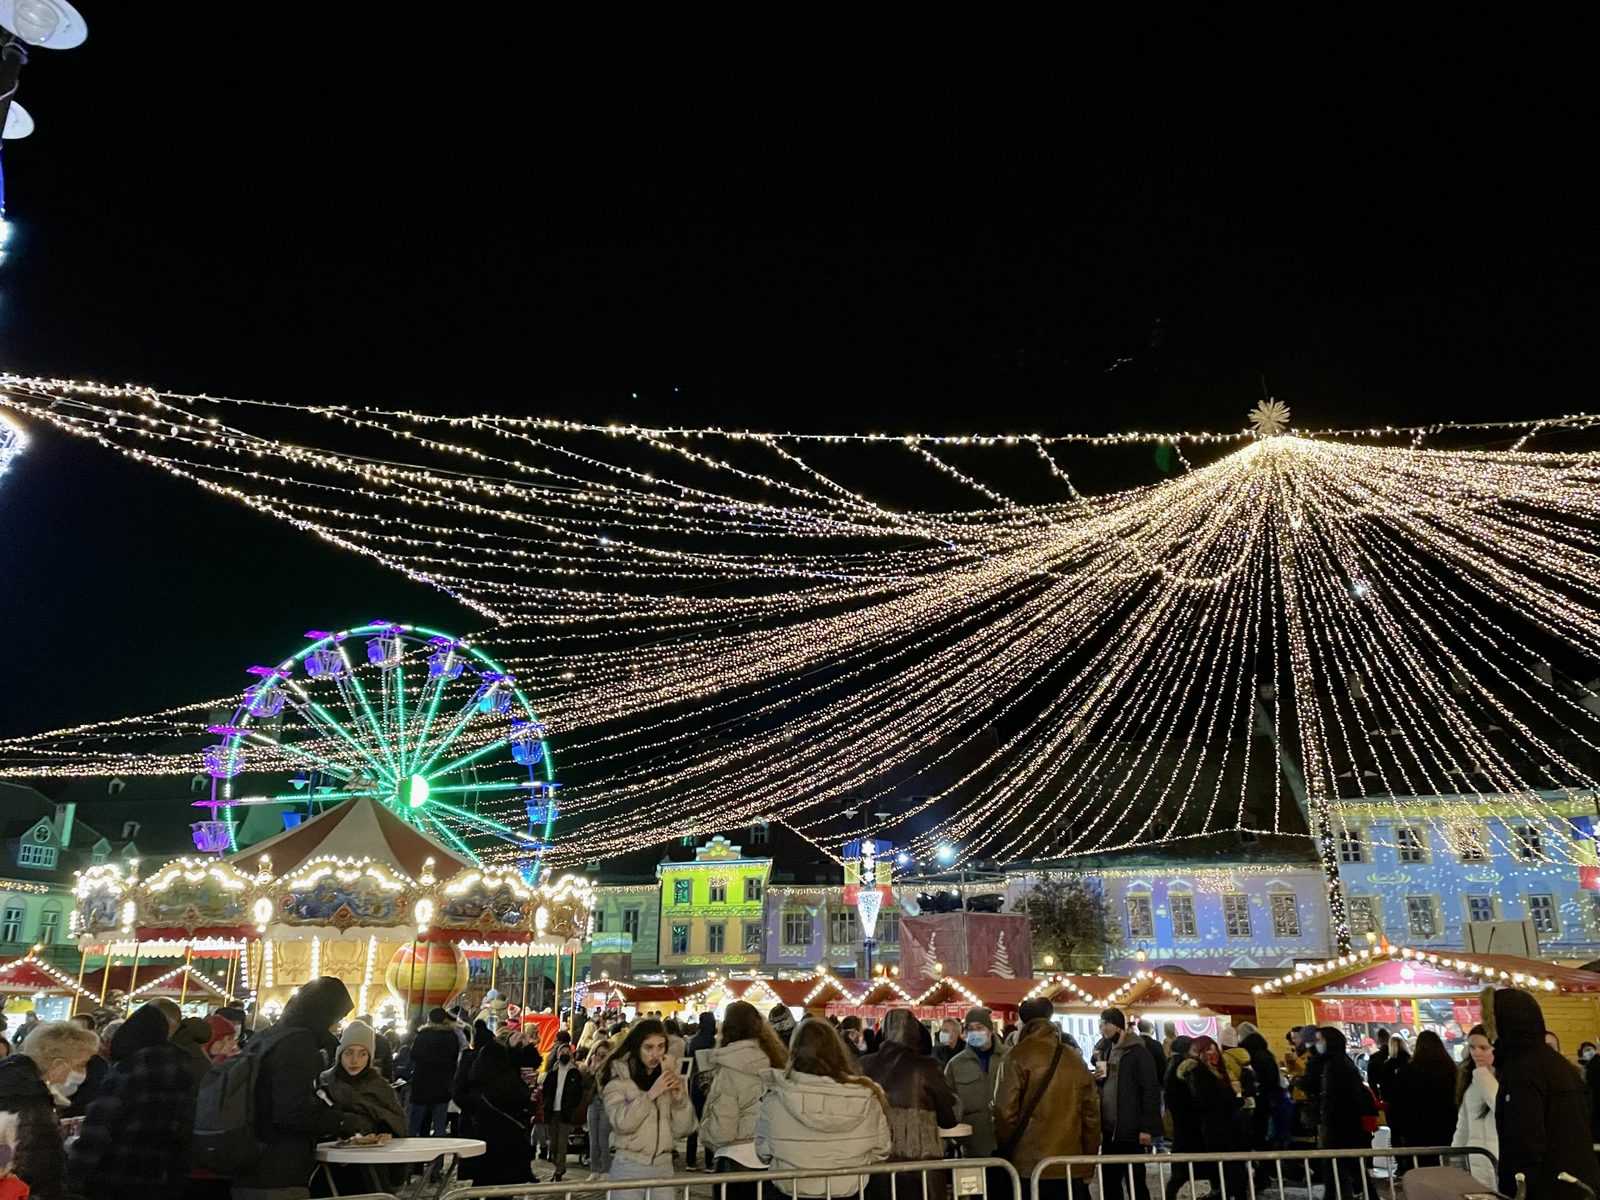 live video: s-au aprins luminile de sărbătoare în centrul sibiului - a început și târgul de crăciun